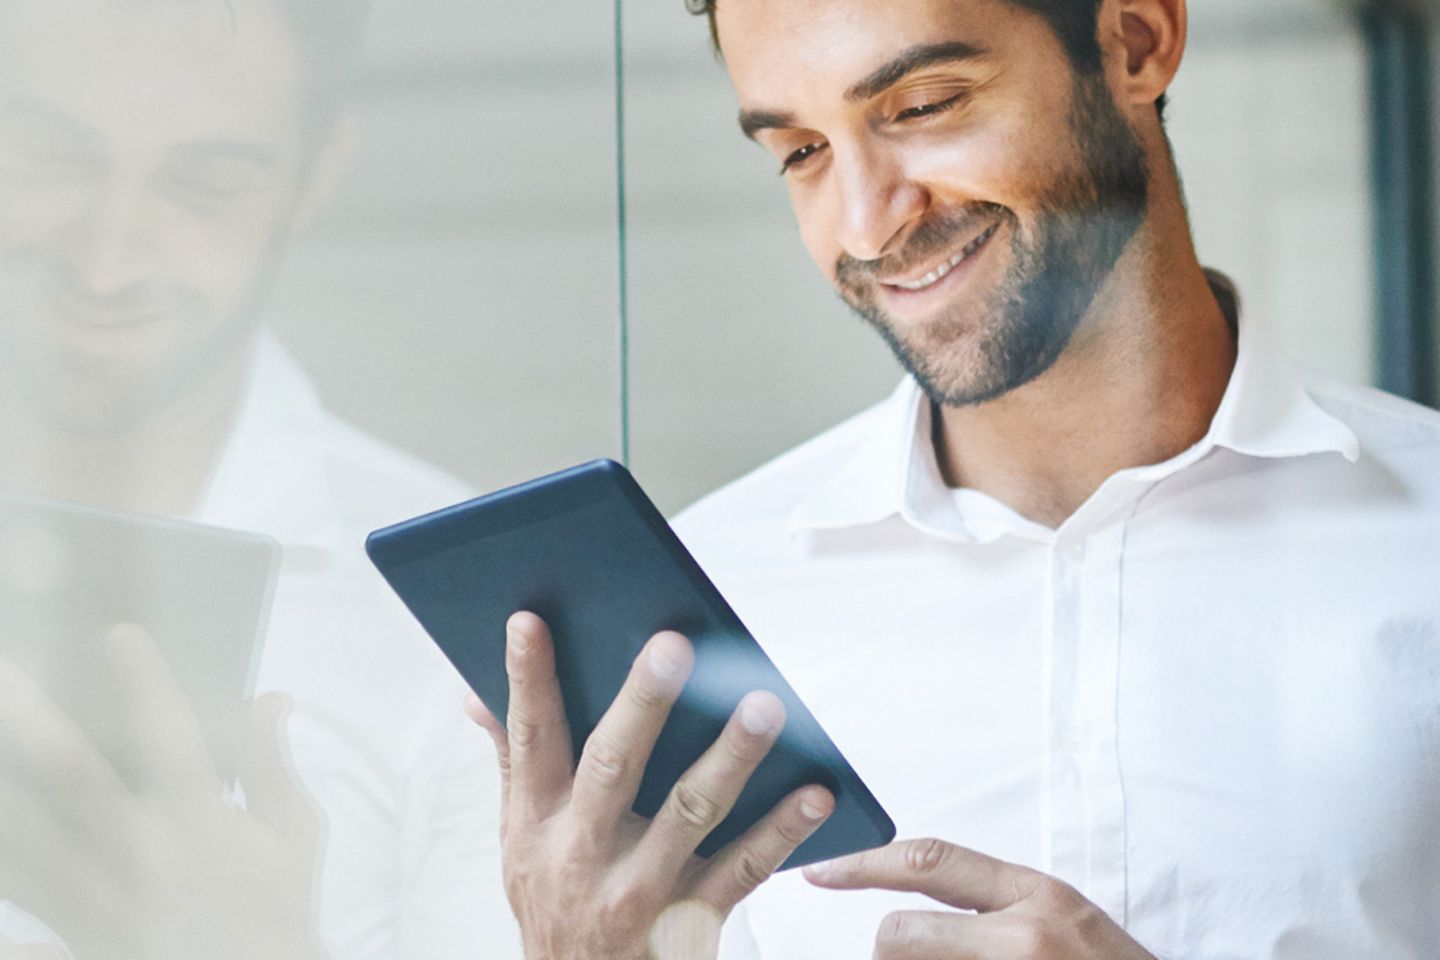 Glimlachende zakenman leunt tegen glasruit en bekijkt tablet